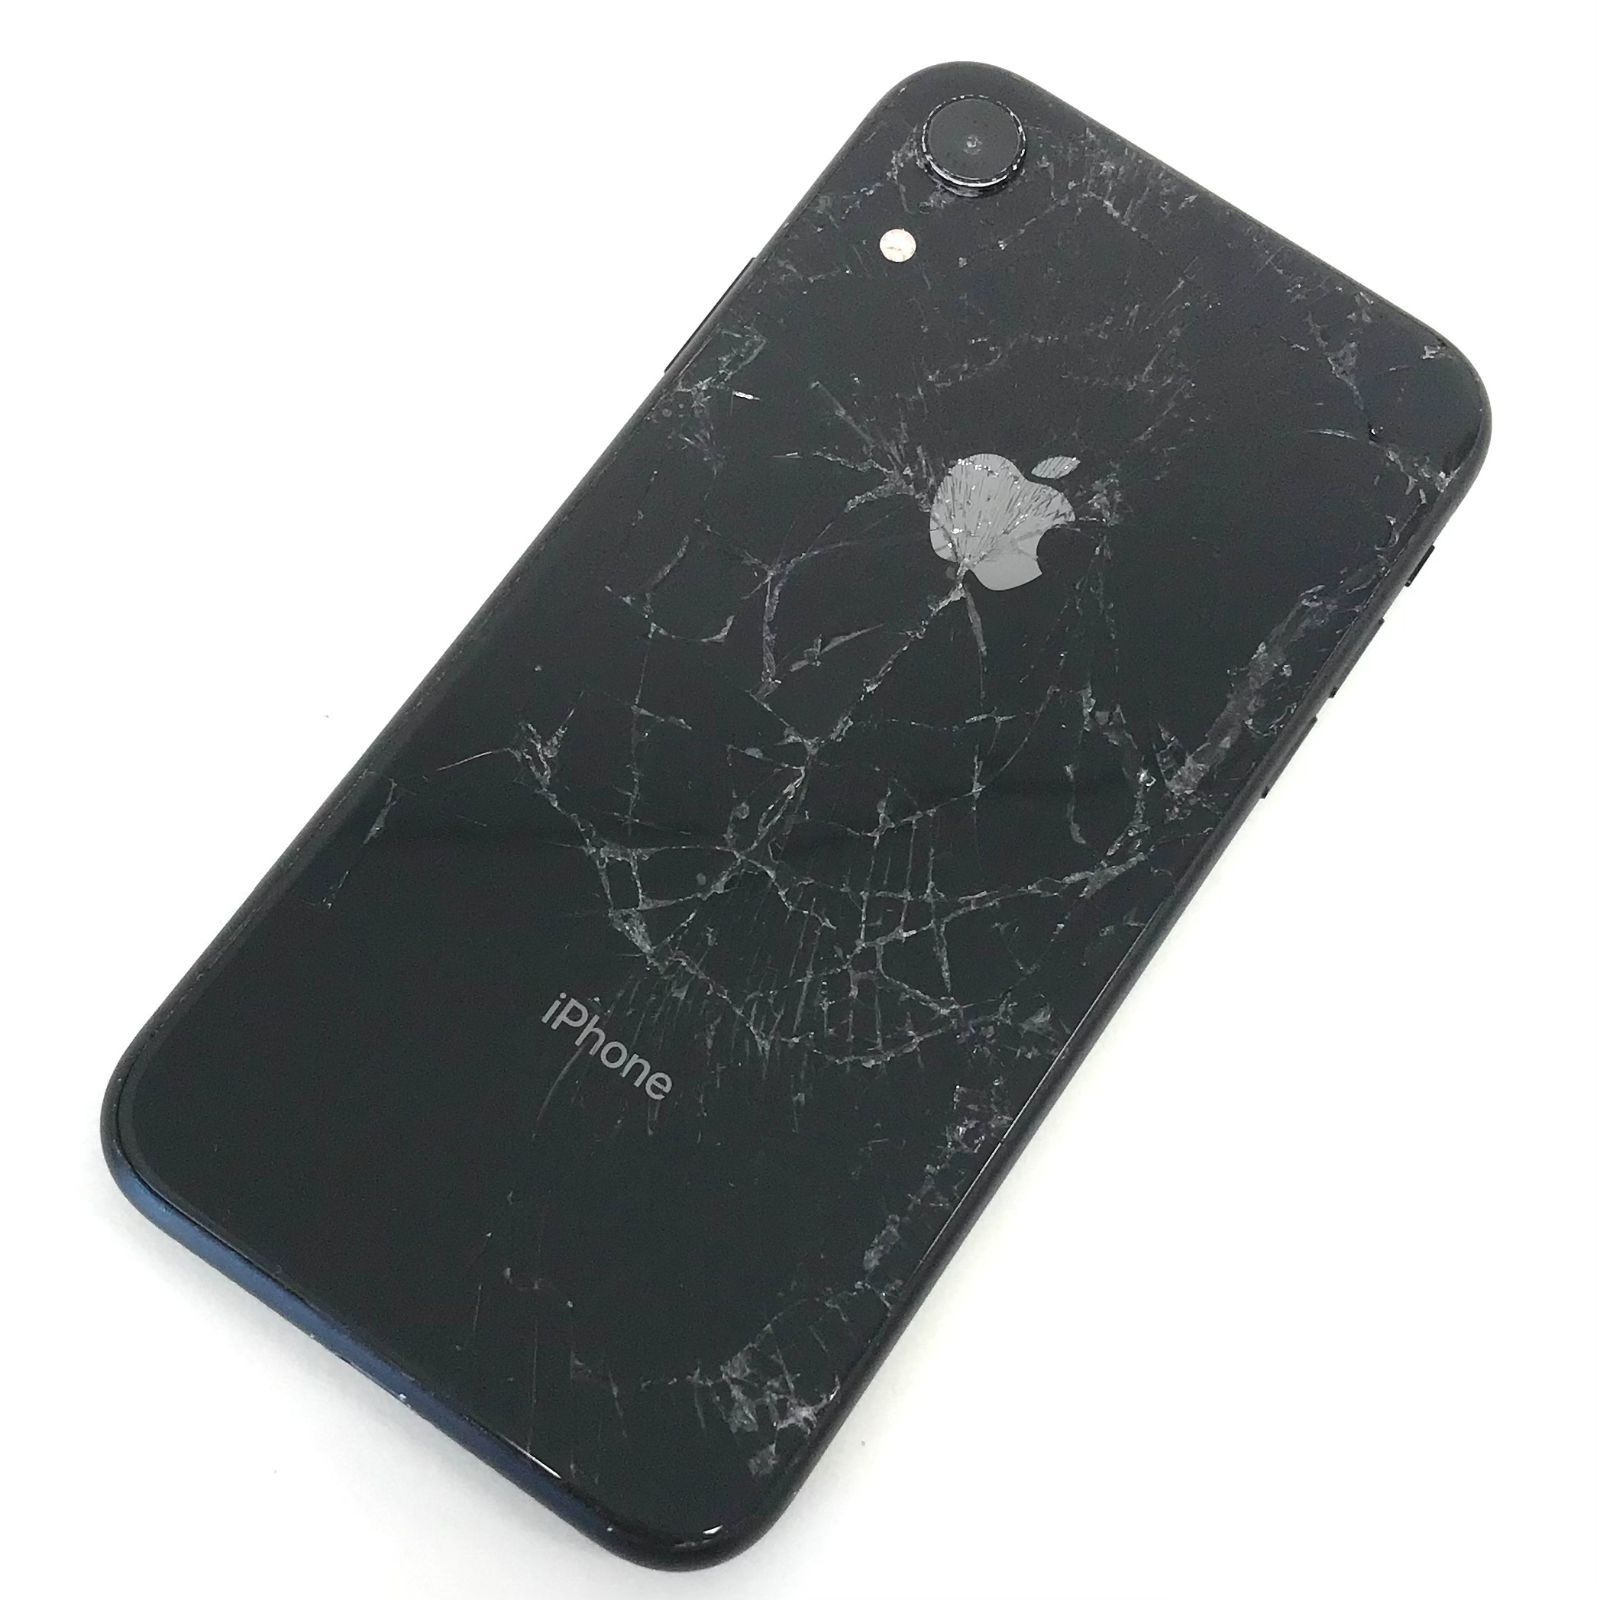 θ【ジャンク品/SIMロック解除済み】iPhone XR 64GB ブラック - メルカリ